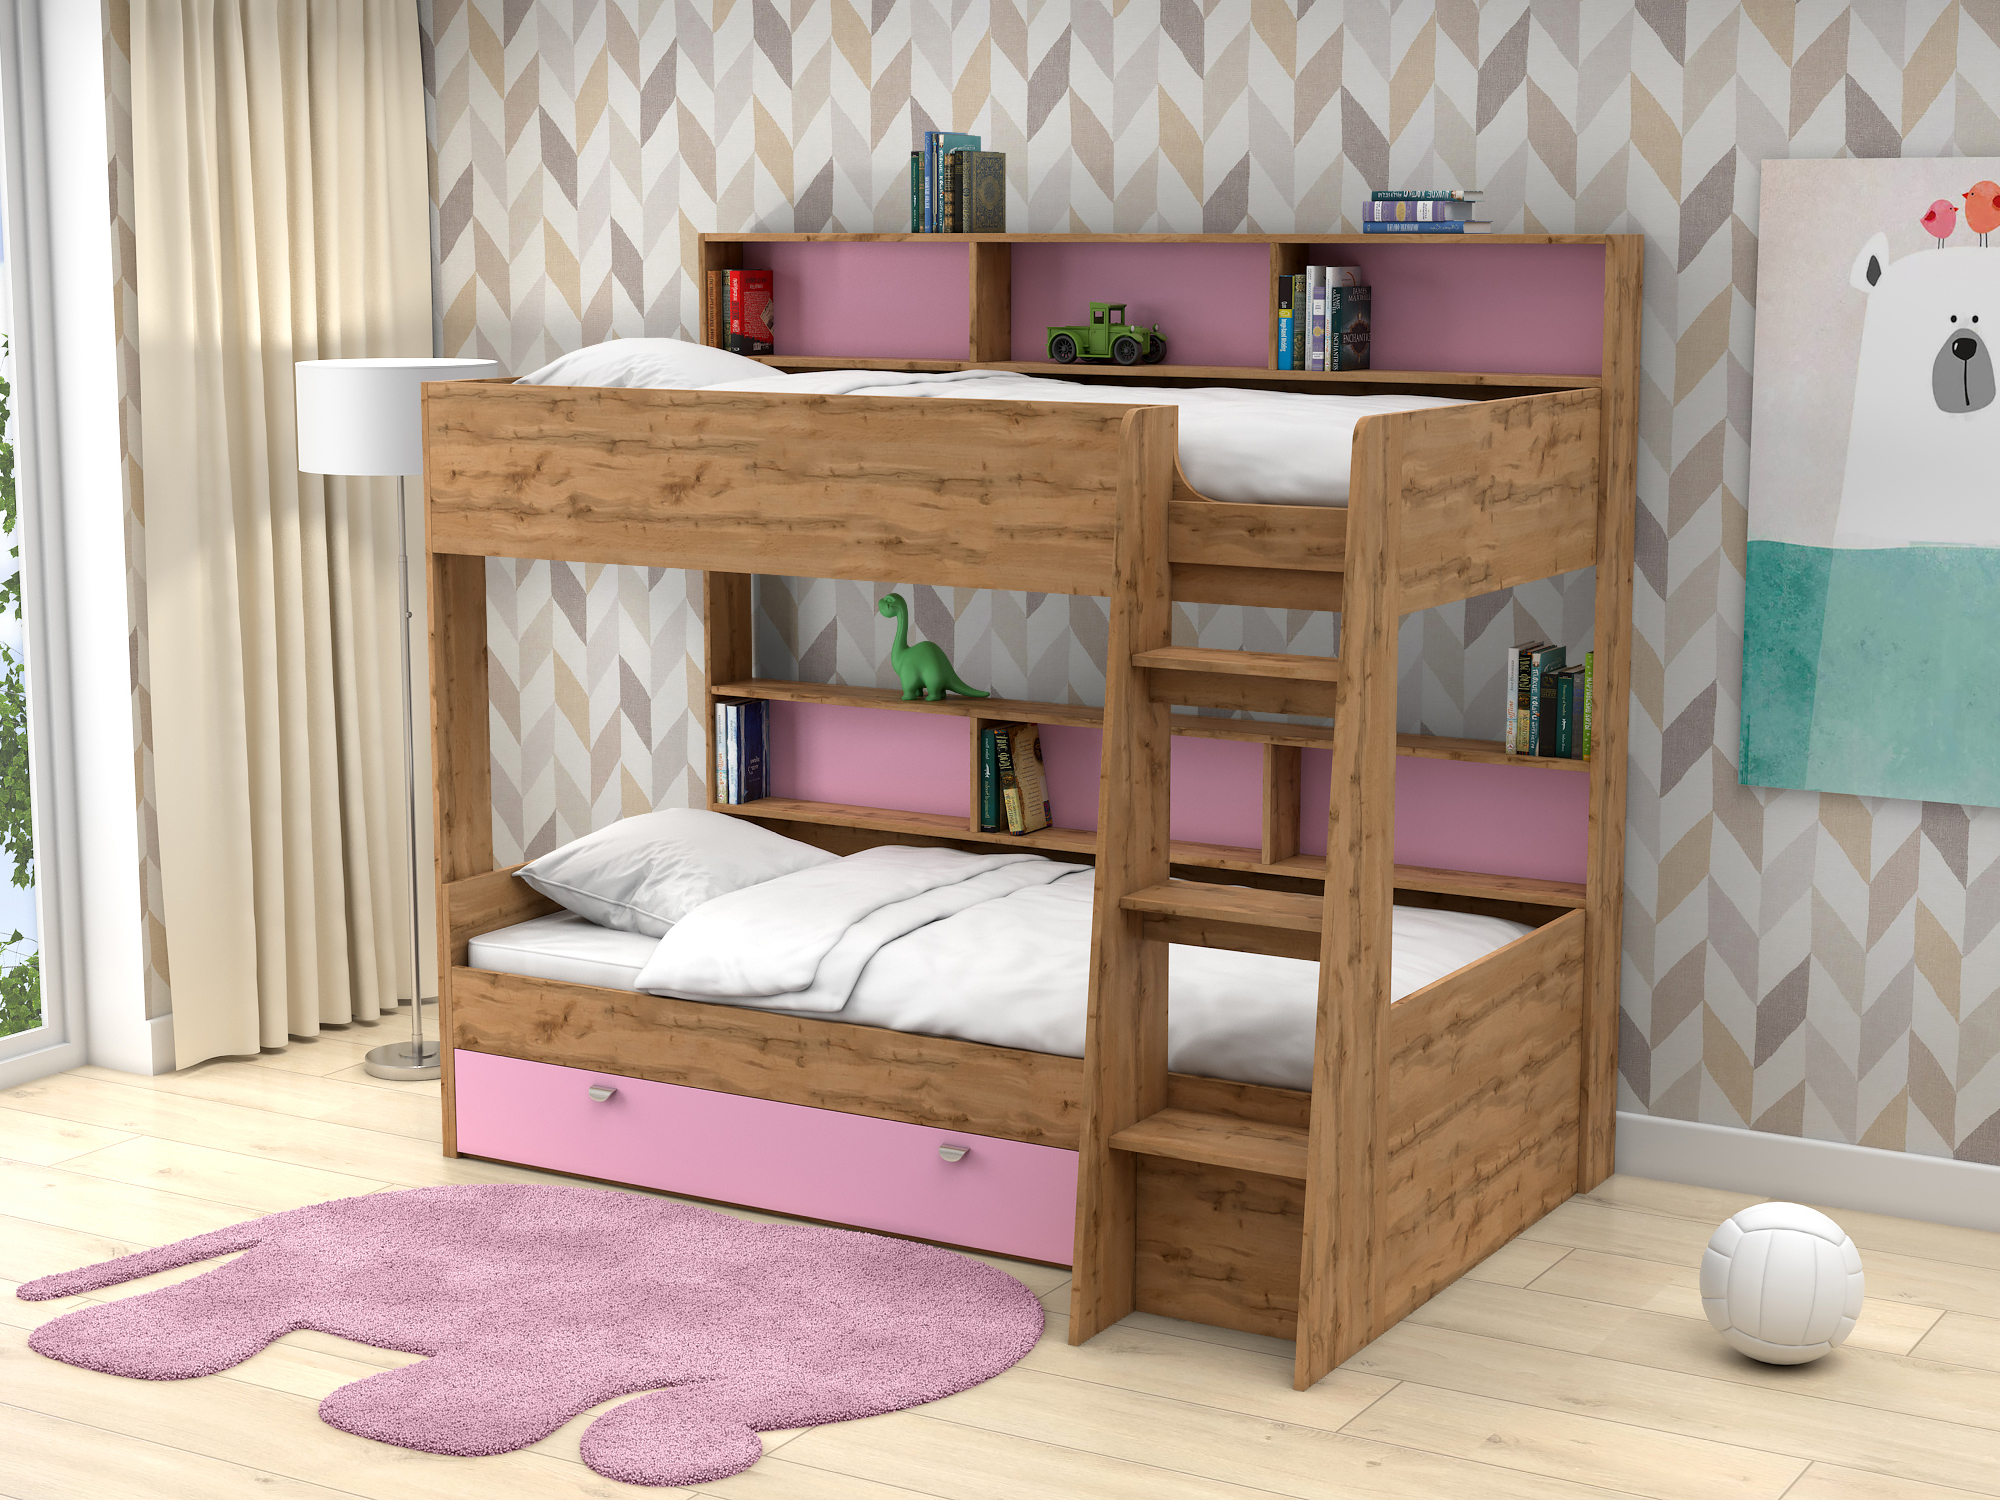 Двухъярусная кровать Golden Kids-1 (90х200) Розовый, Бежевый, ЛДСП кровати для подростков белый слон plus golden kids 1 двухъярусная белый